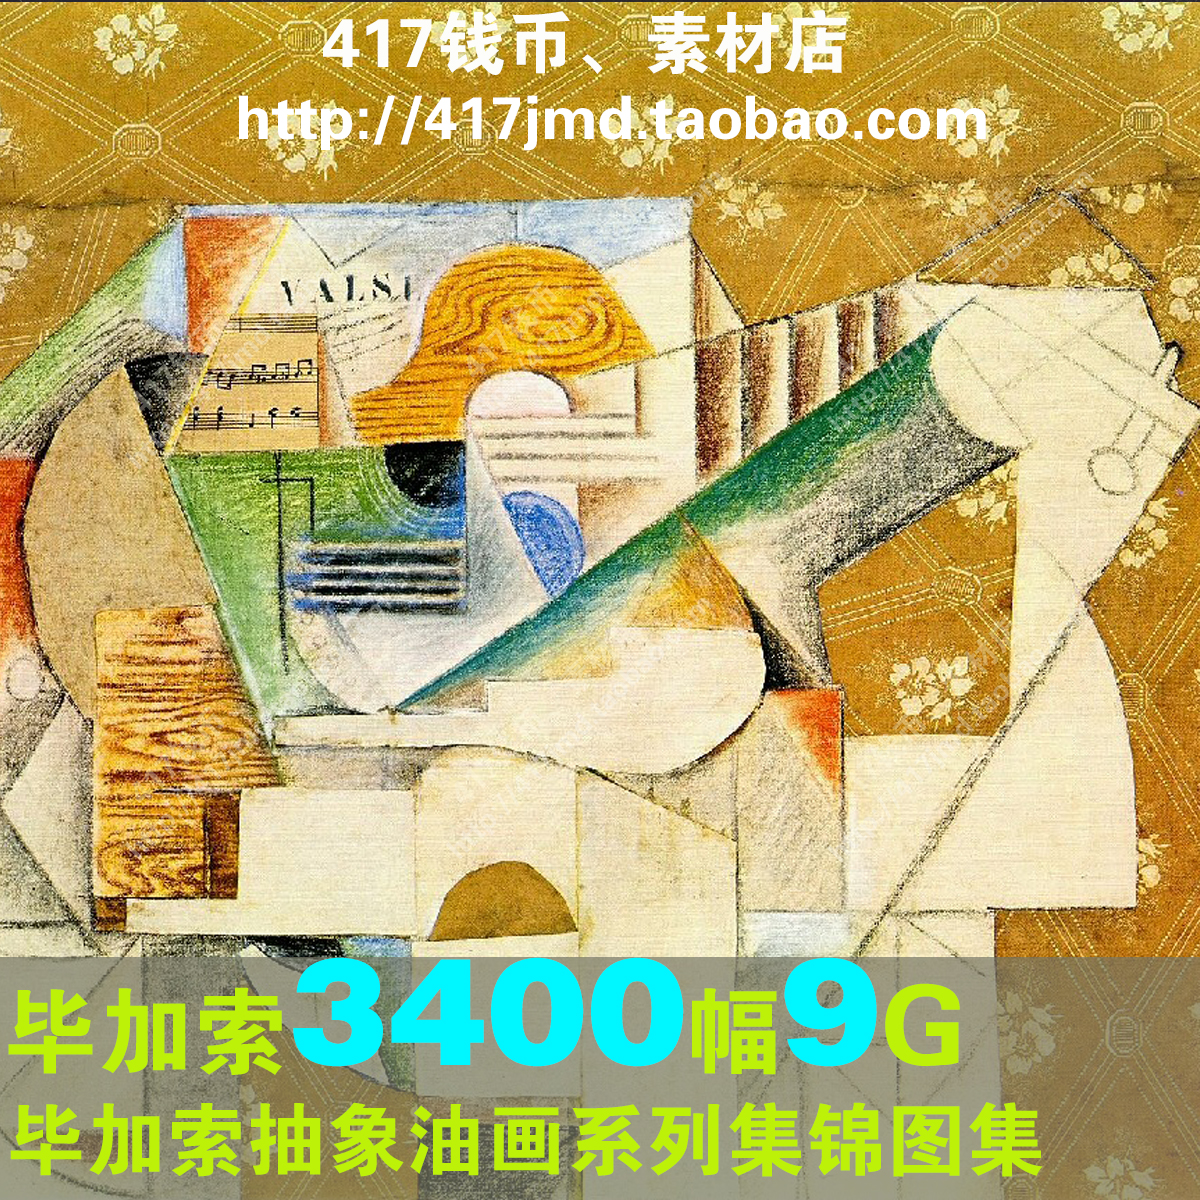 [油画]抽象派艺术绘画大师毕加索作品集装饰画3400幅临摹图片素材